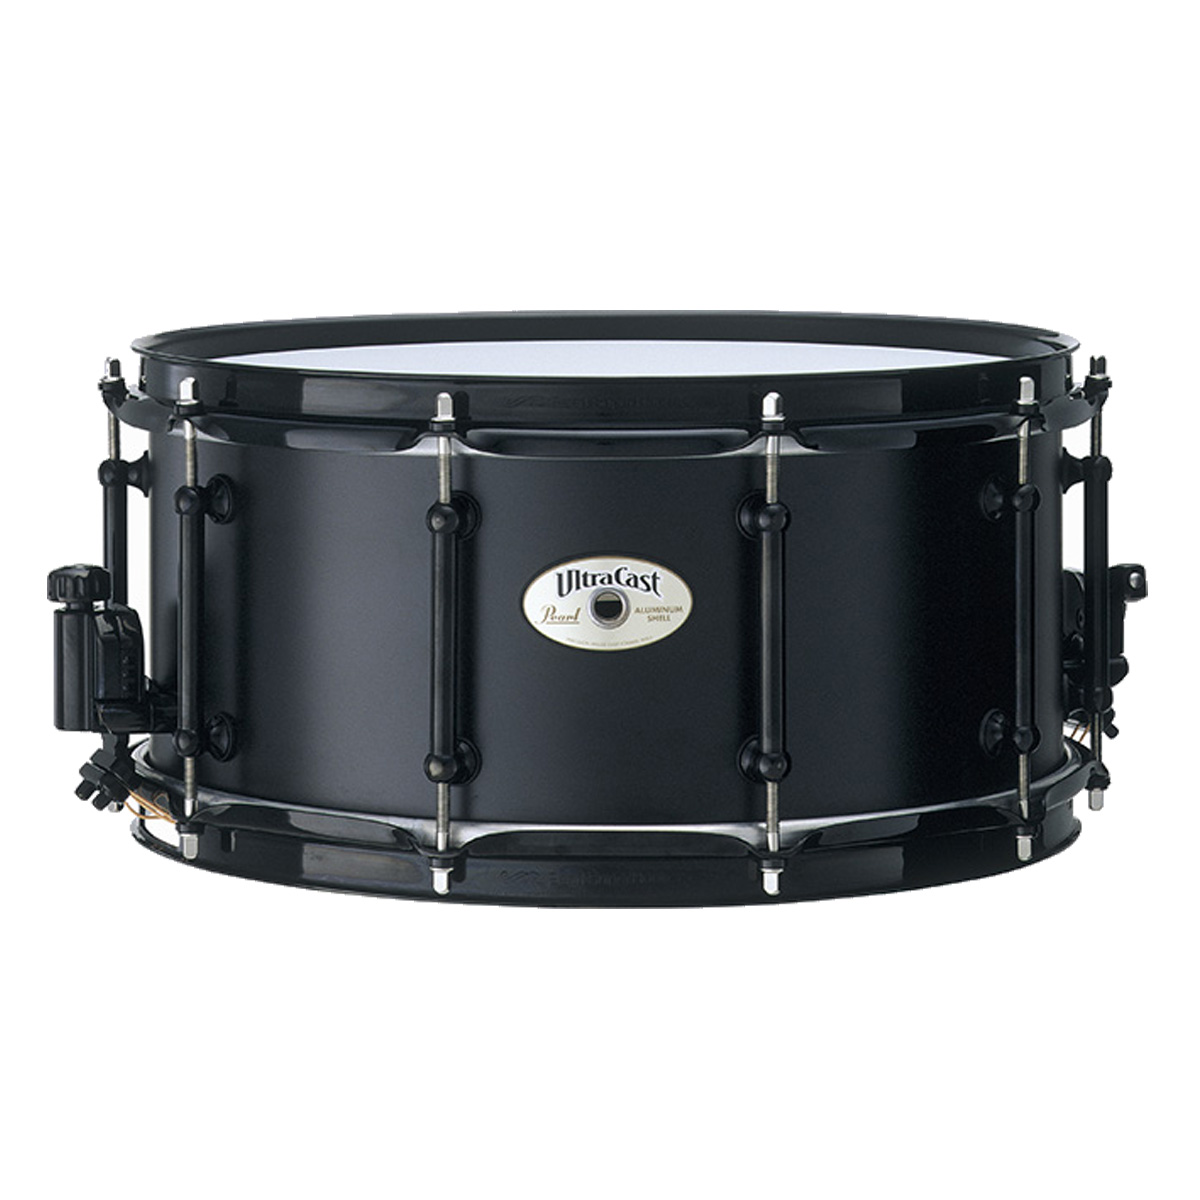 PEARL / UltraCast Snare Drum UCA1465/B 14x6.5 ソフトケース付き パール ウルトラキャスト スネアドラム